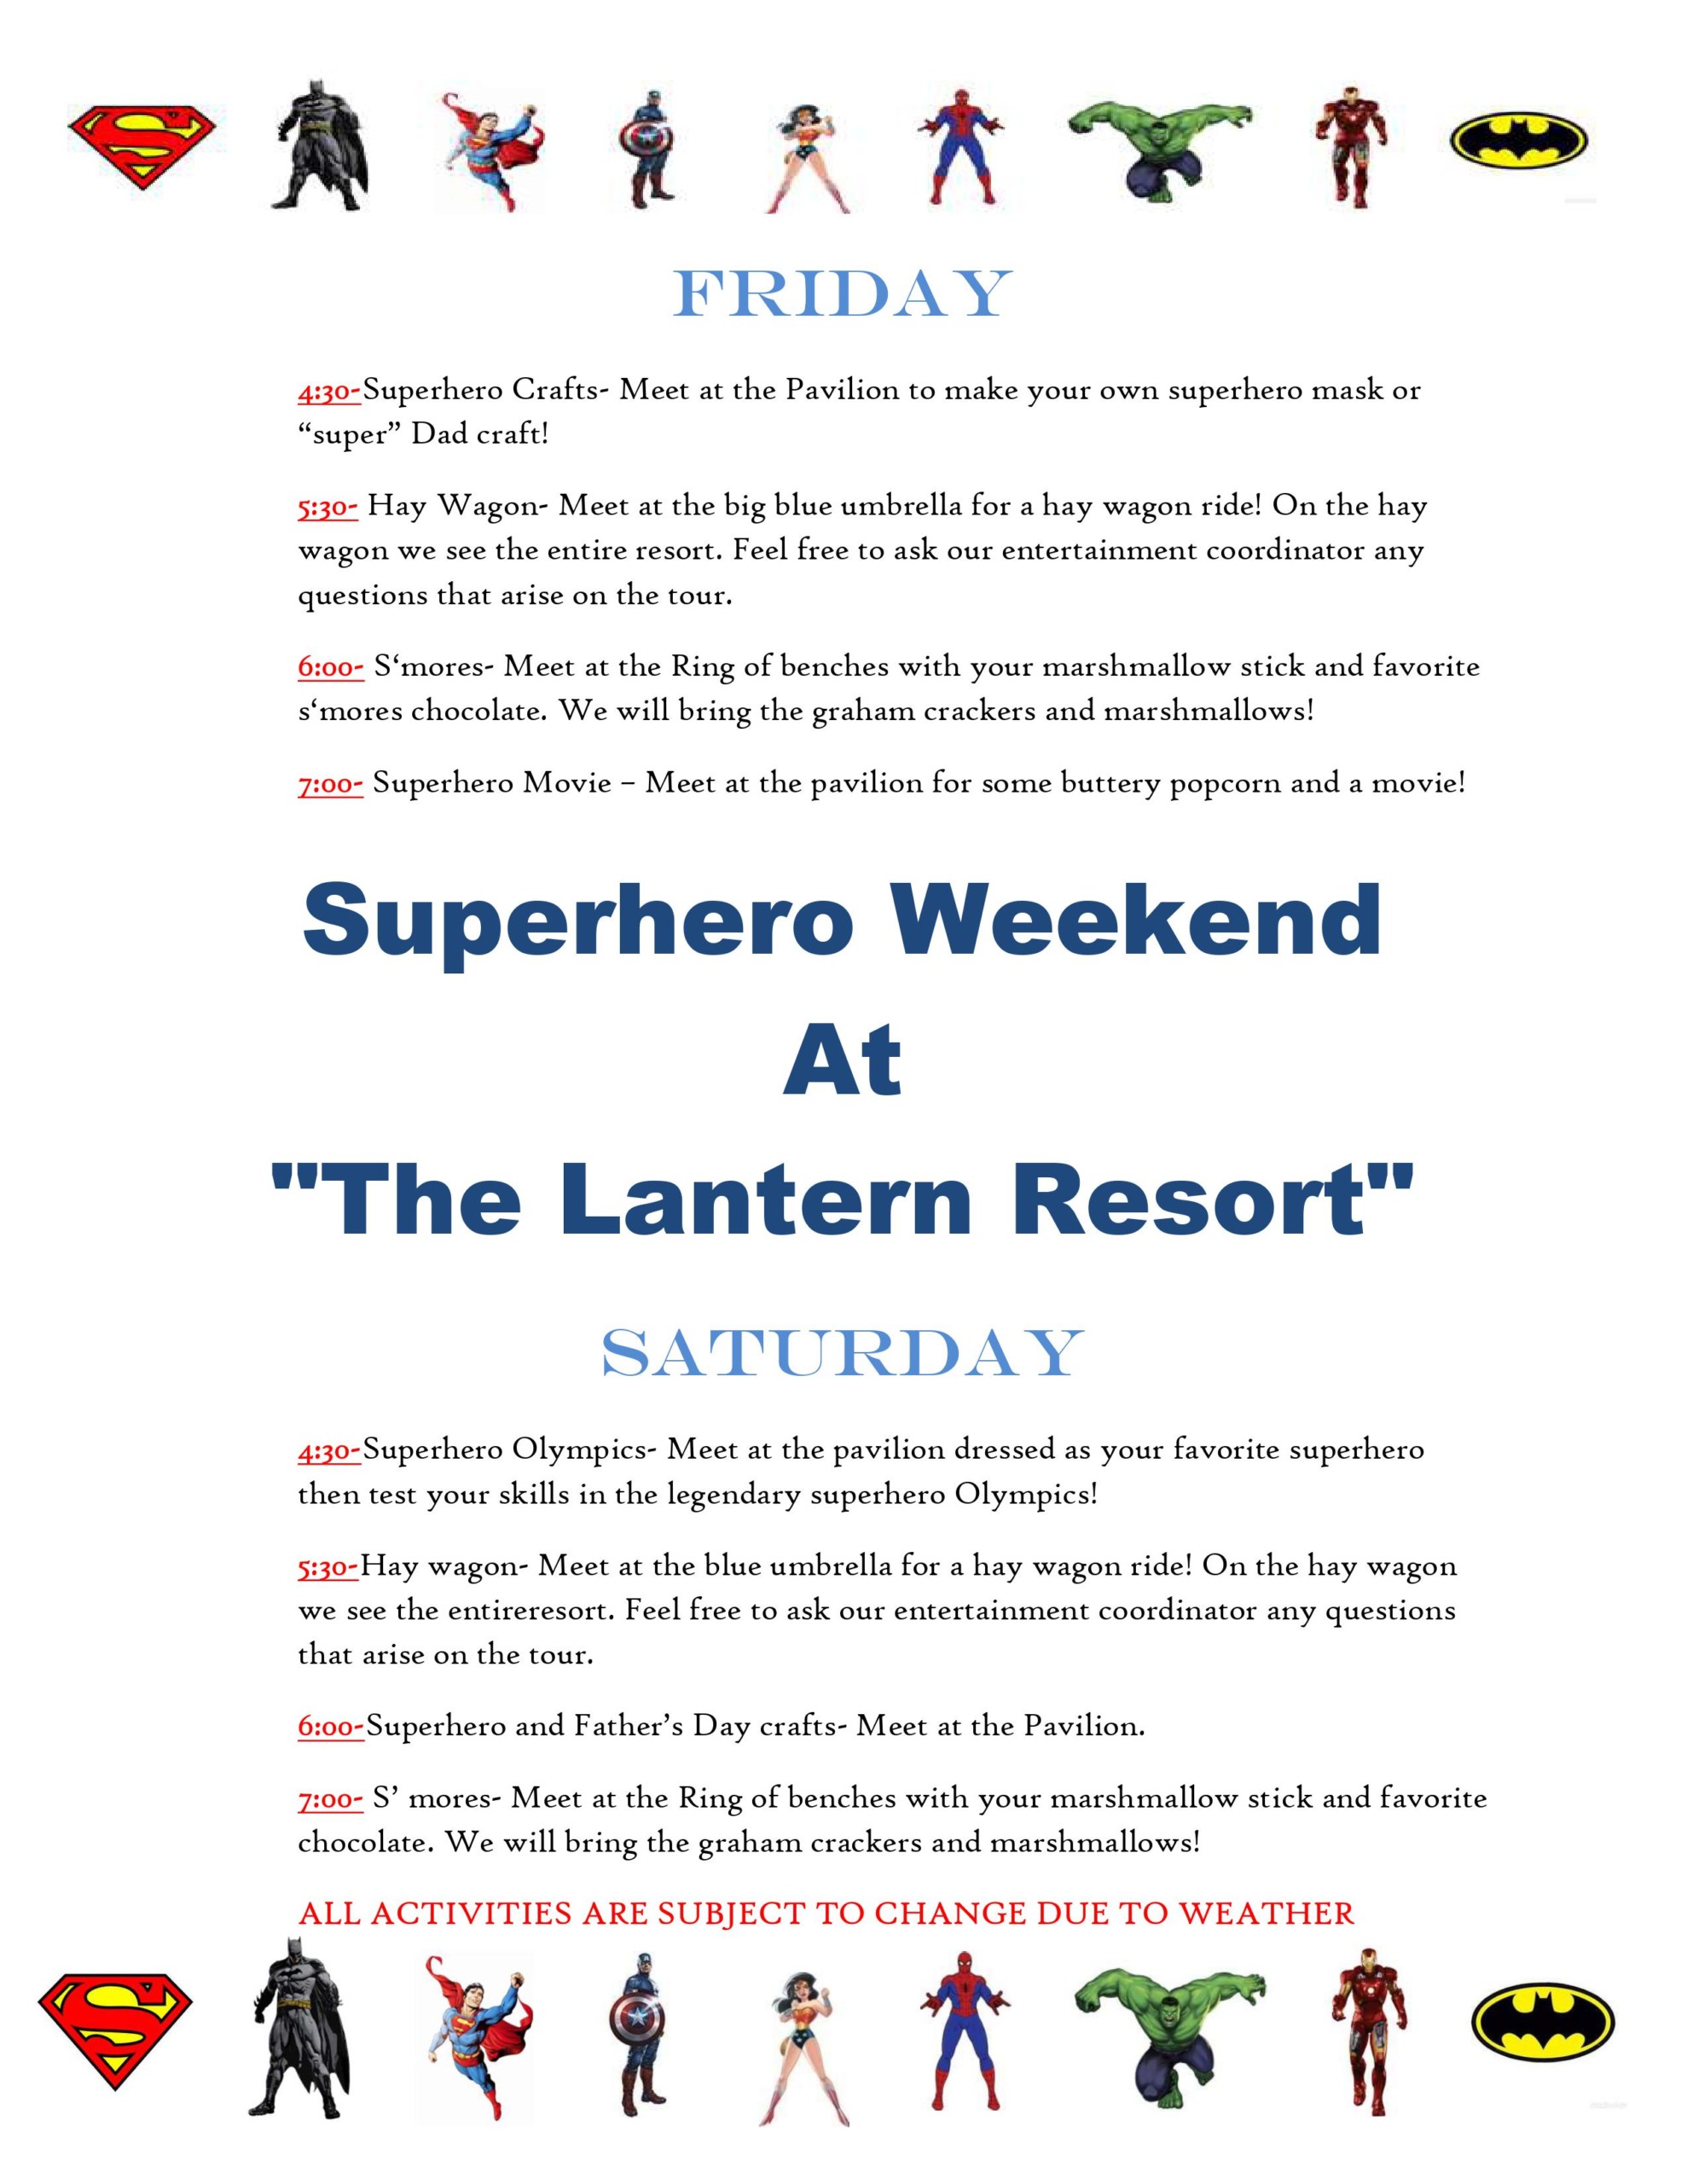 Super Hero - The Lantern Resort